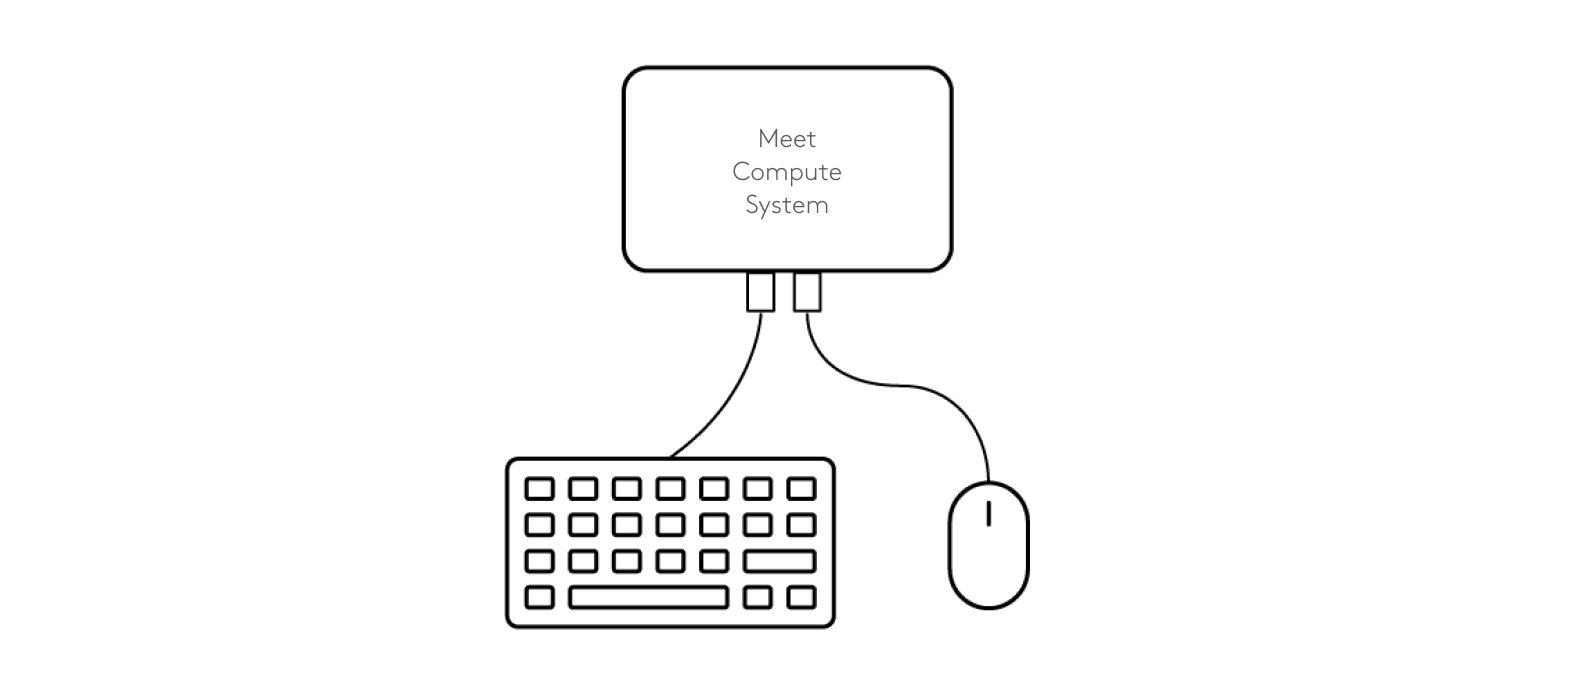 Aansluitingsschema voor toetsenbord en muis met Meet Compute System